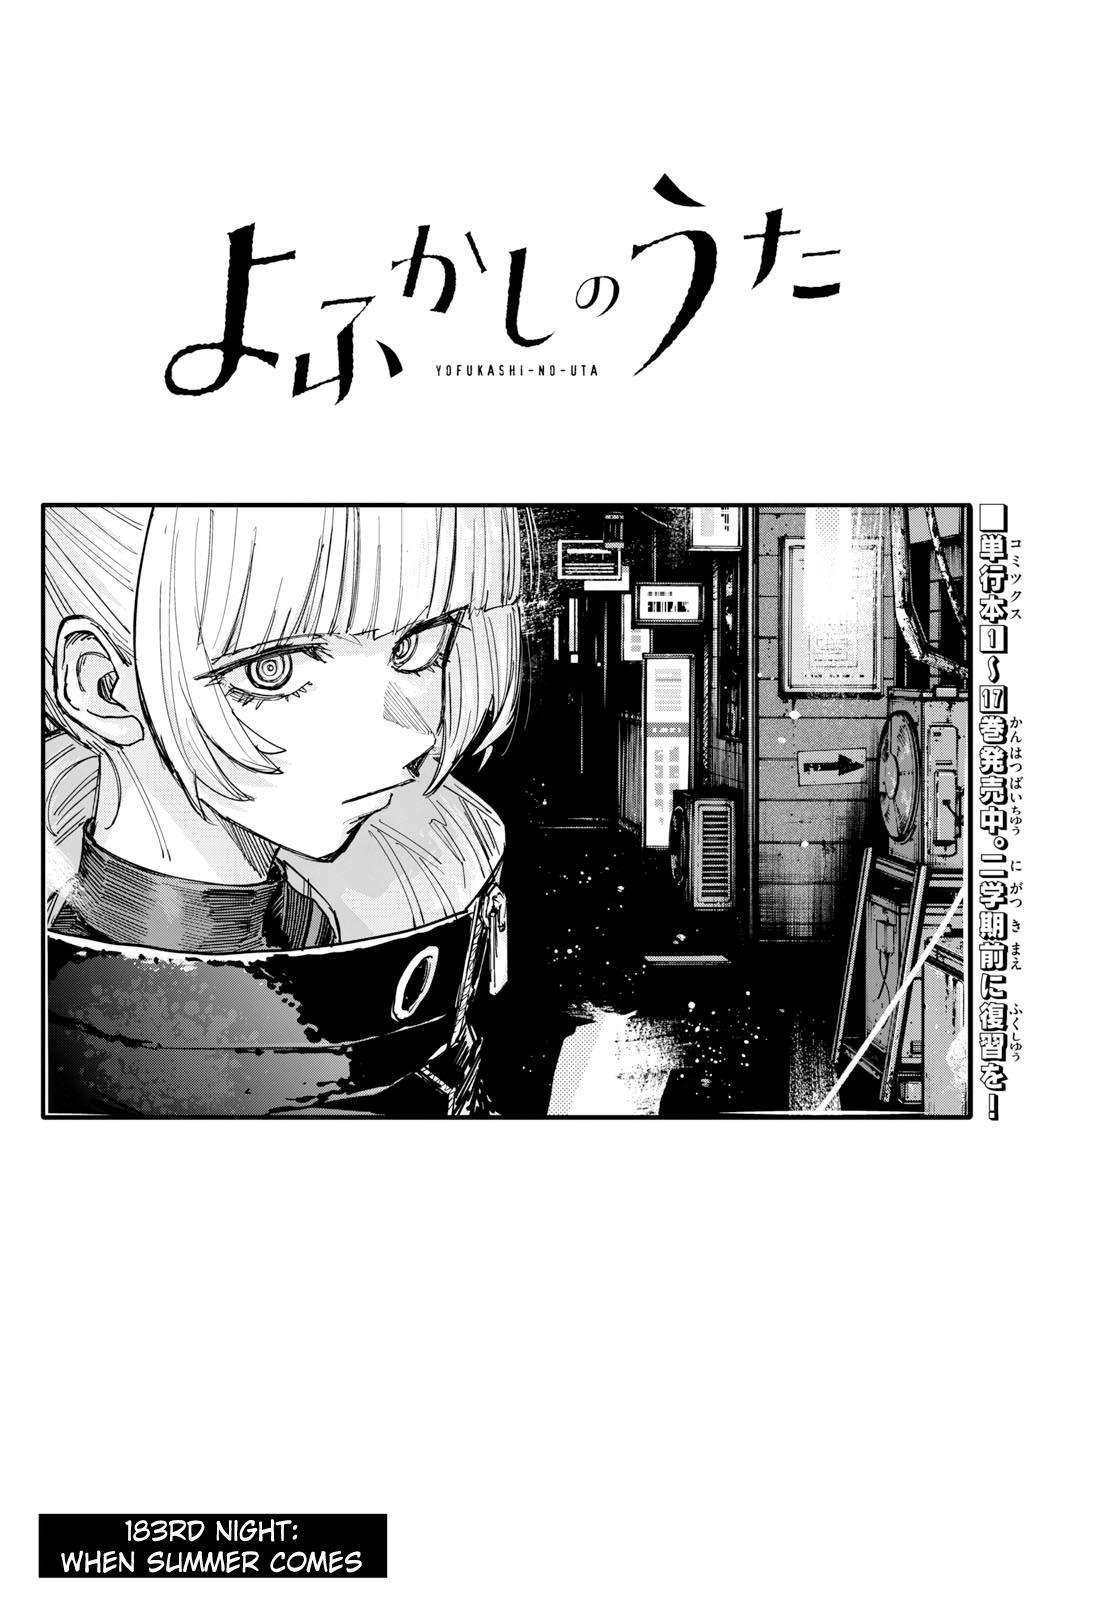 Yofukashi no Uta Vol.9 Ch.147 Page 18 - Mangago